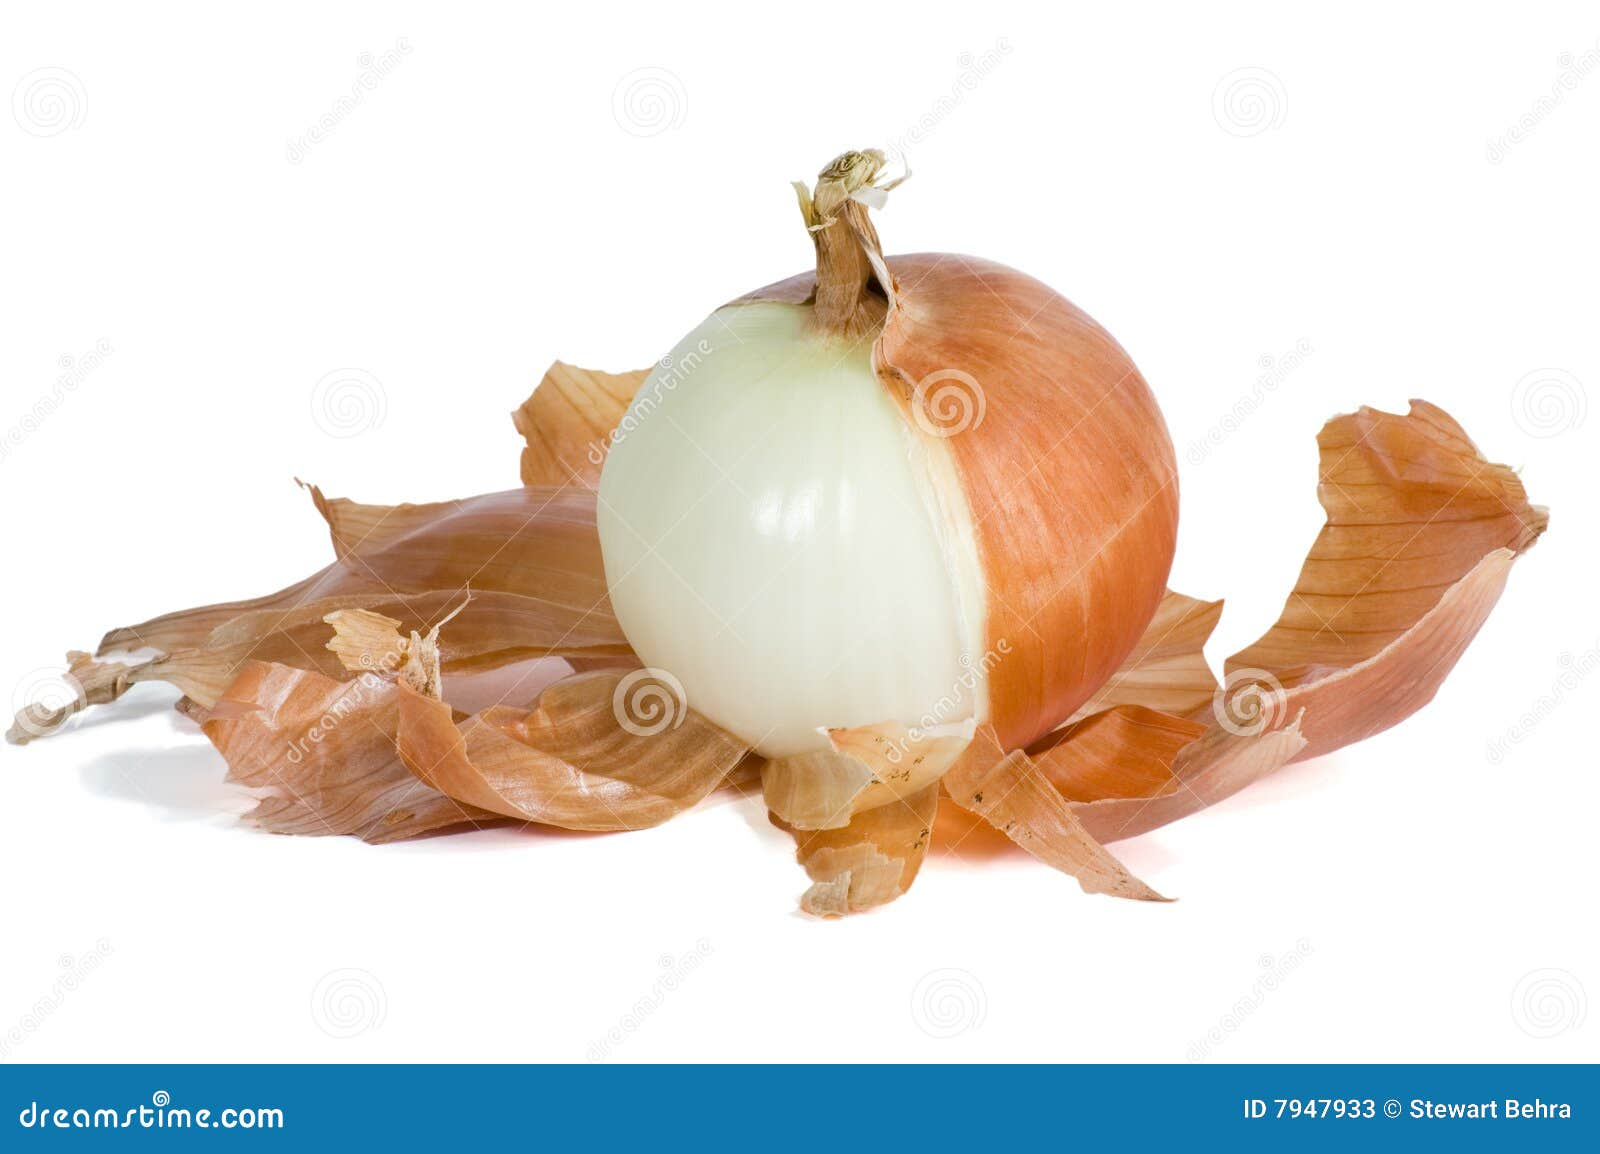 onion half peeled